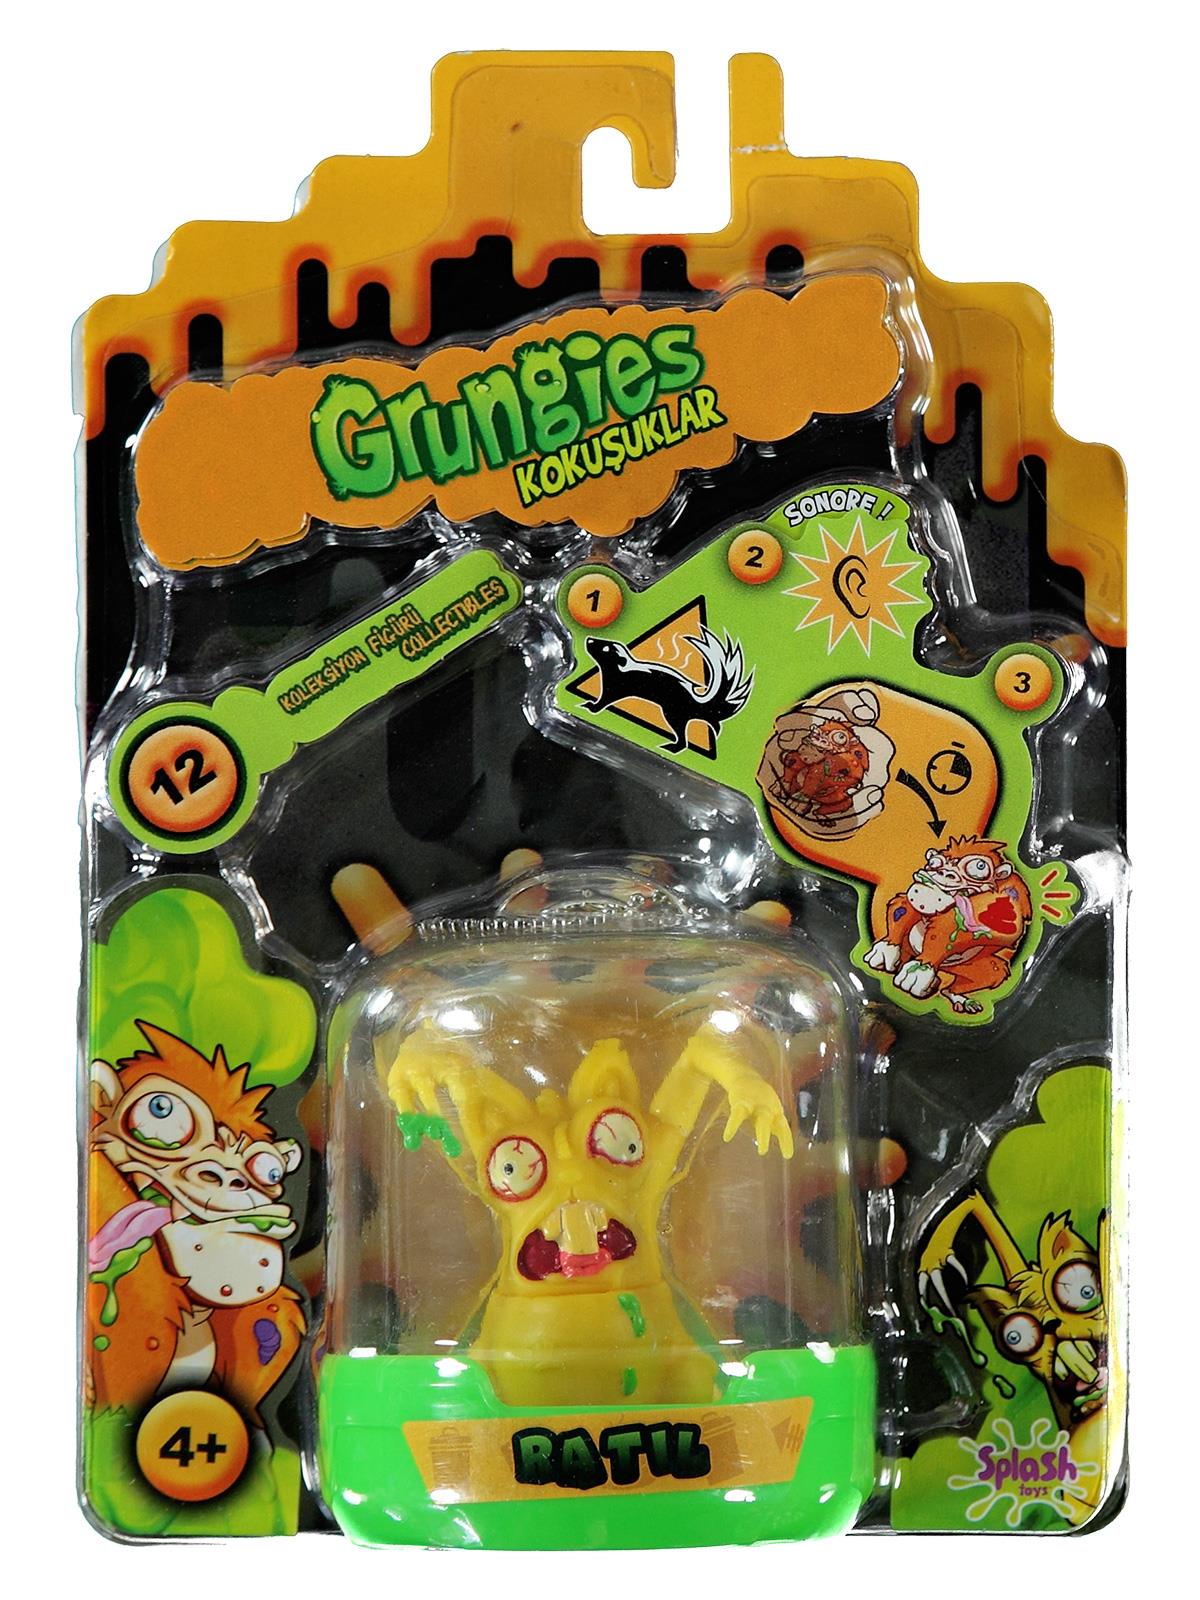 Grungies Mini Kokuşuklar Sıçrama Oyuncakları Sarı 4+ Yaş